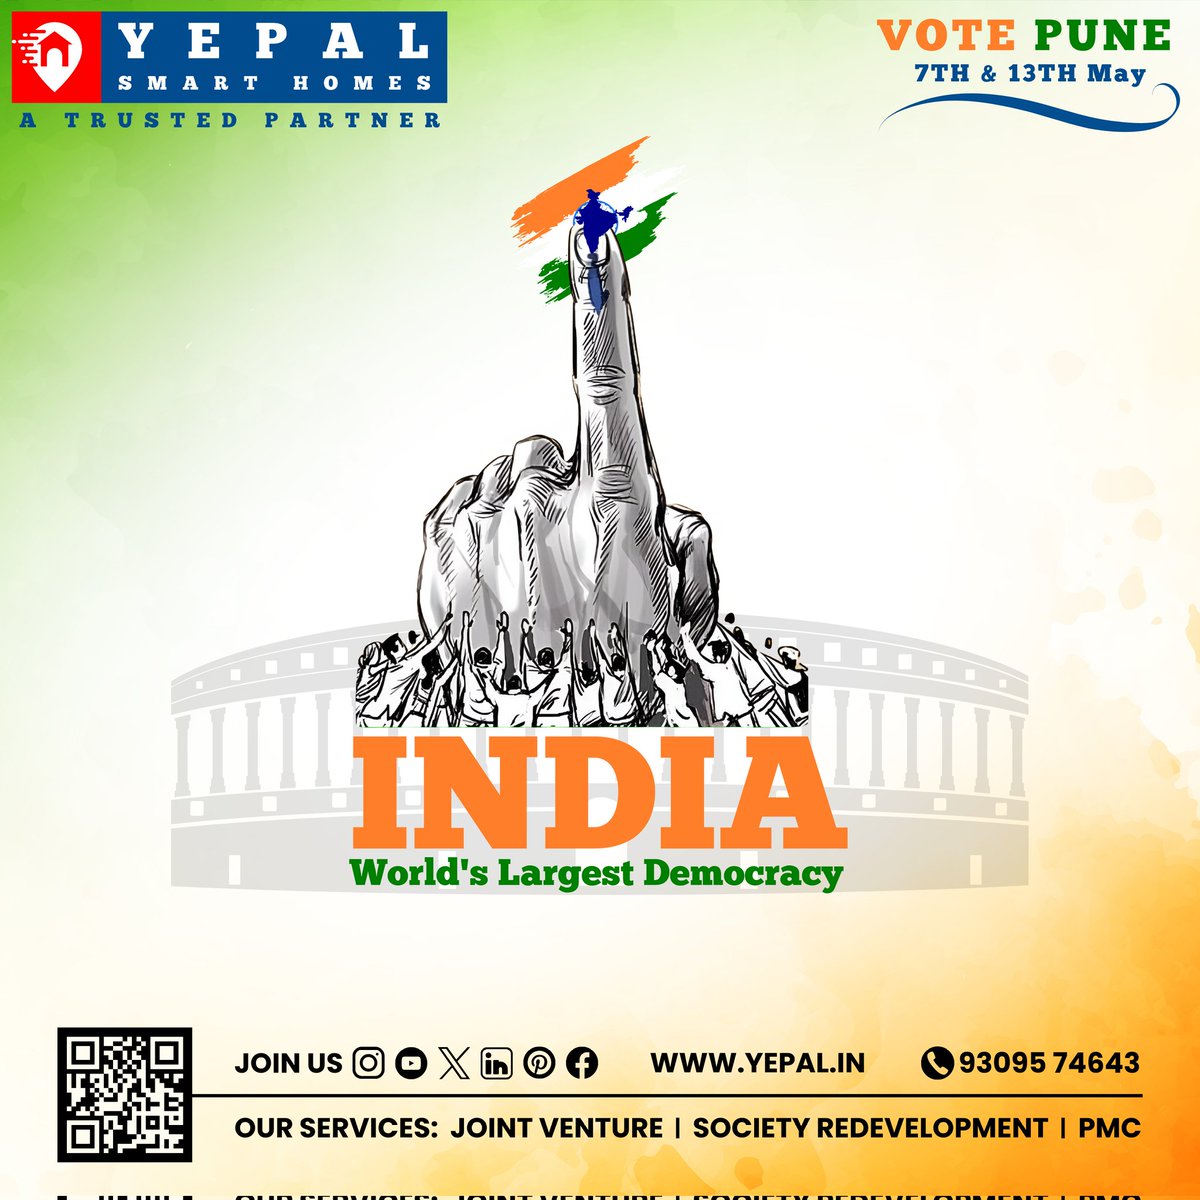 पुणेकरांनो, उद्या लोकशाहीचा सर्वात महत्वाचा दिवस आहे, तुमचे मत तुमचा आवाज आहे, एक नैतिक आणि जबाबदार मतदार बना.
#VoteIndia #yepalsmarthomes #punepropertyportal 
#ElectionCommission #LokSabhaElections2024  #May7 #May13 #democracy #IndianElections #VotePune #trusteddeveloper